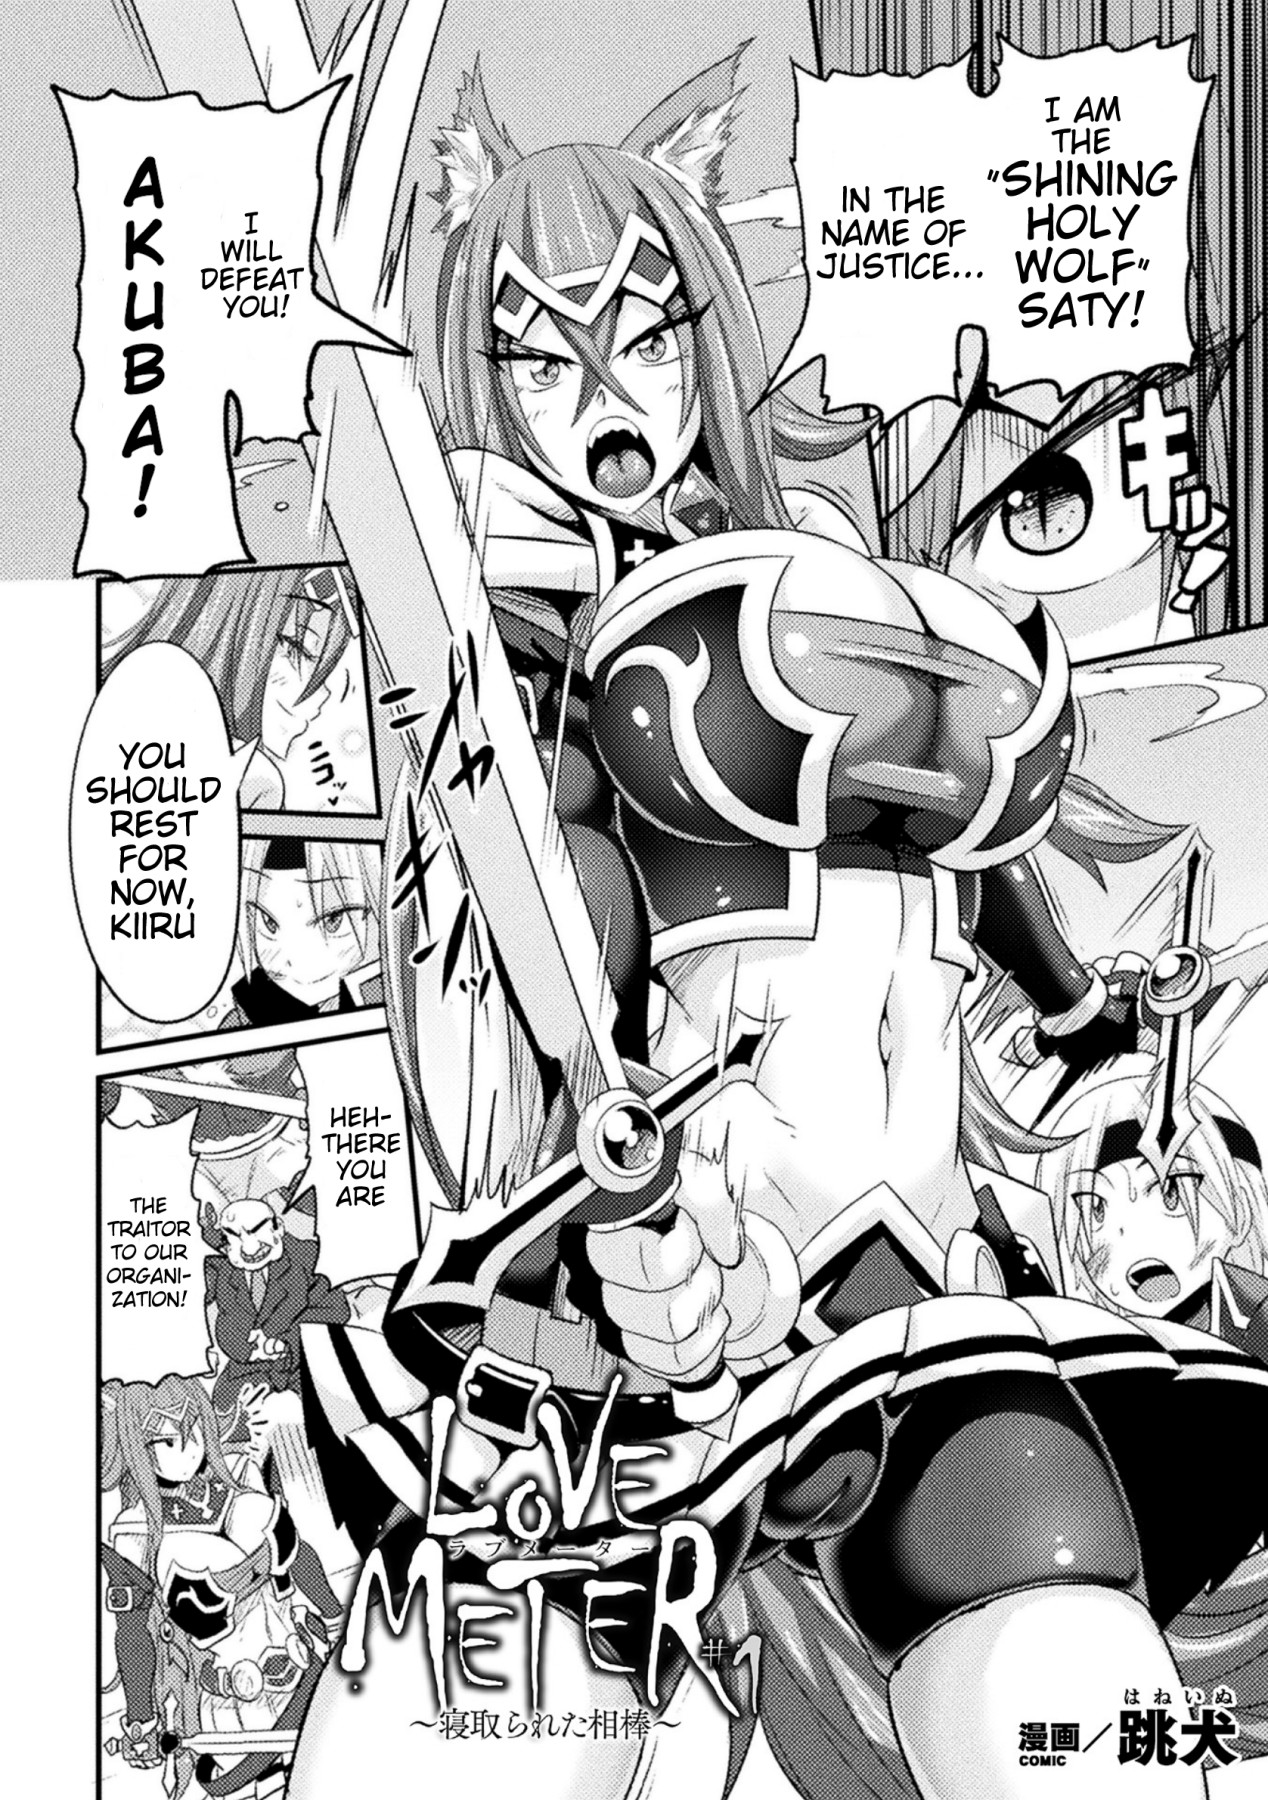 Hentai Manga Comic-LOVE METER-Read-2